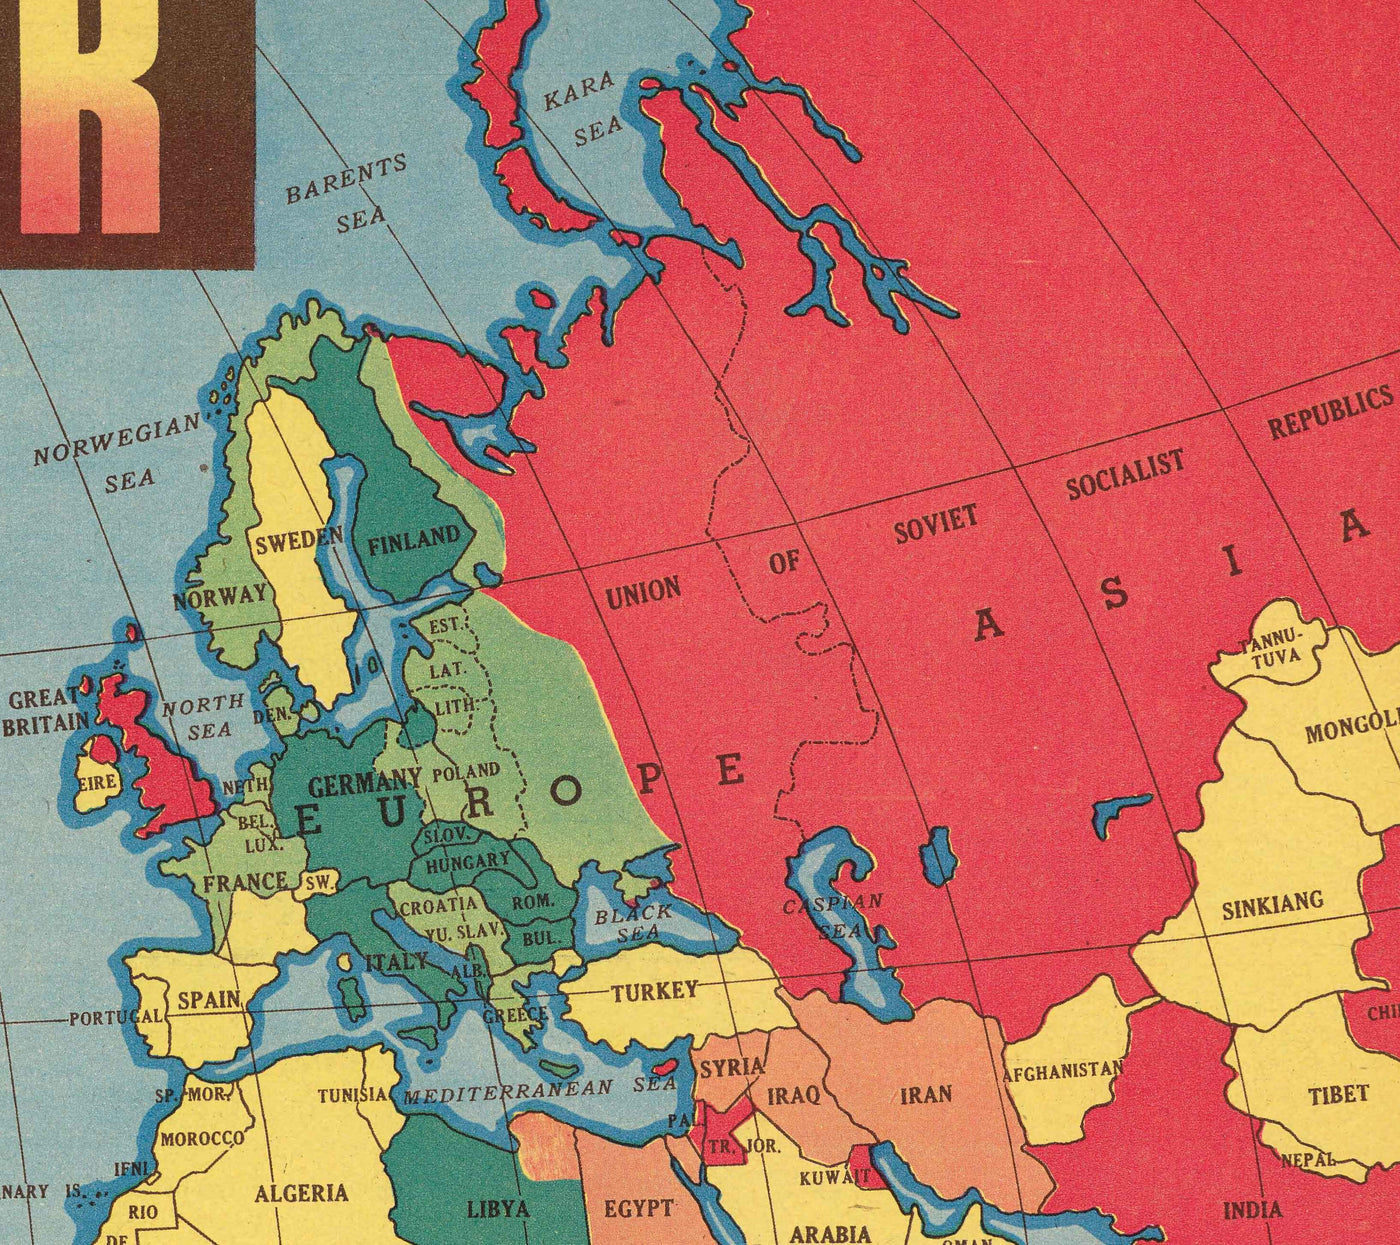 Ancienne carte de la Seconde Guerre mondiale, 1942 - "World at War" par Edwin Sundberg - Les États-Unis entrent en guerre - Alliés contre troupes de l'Axe